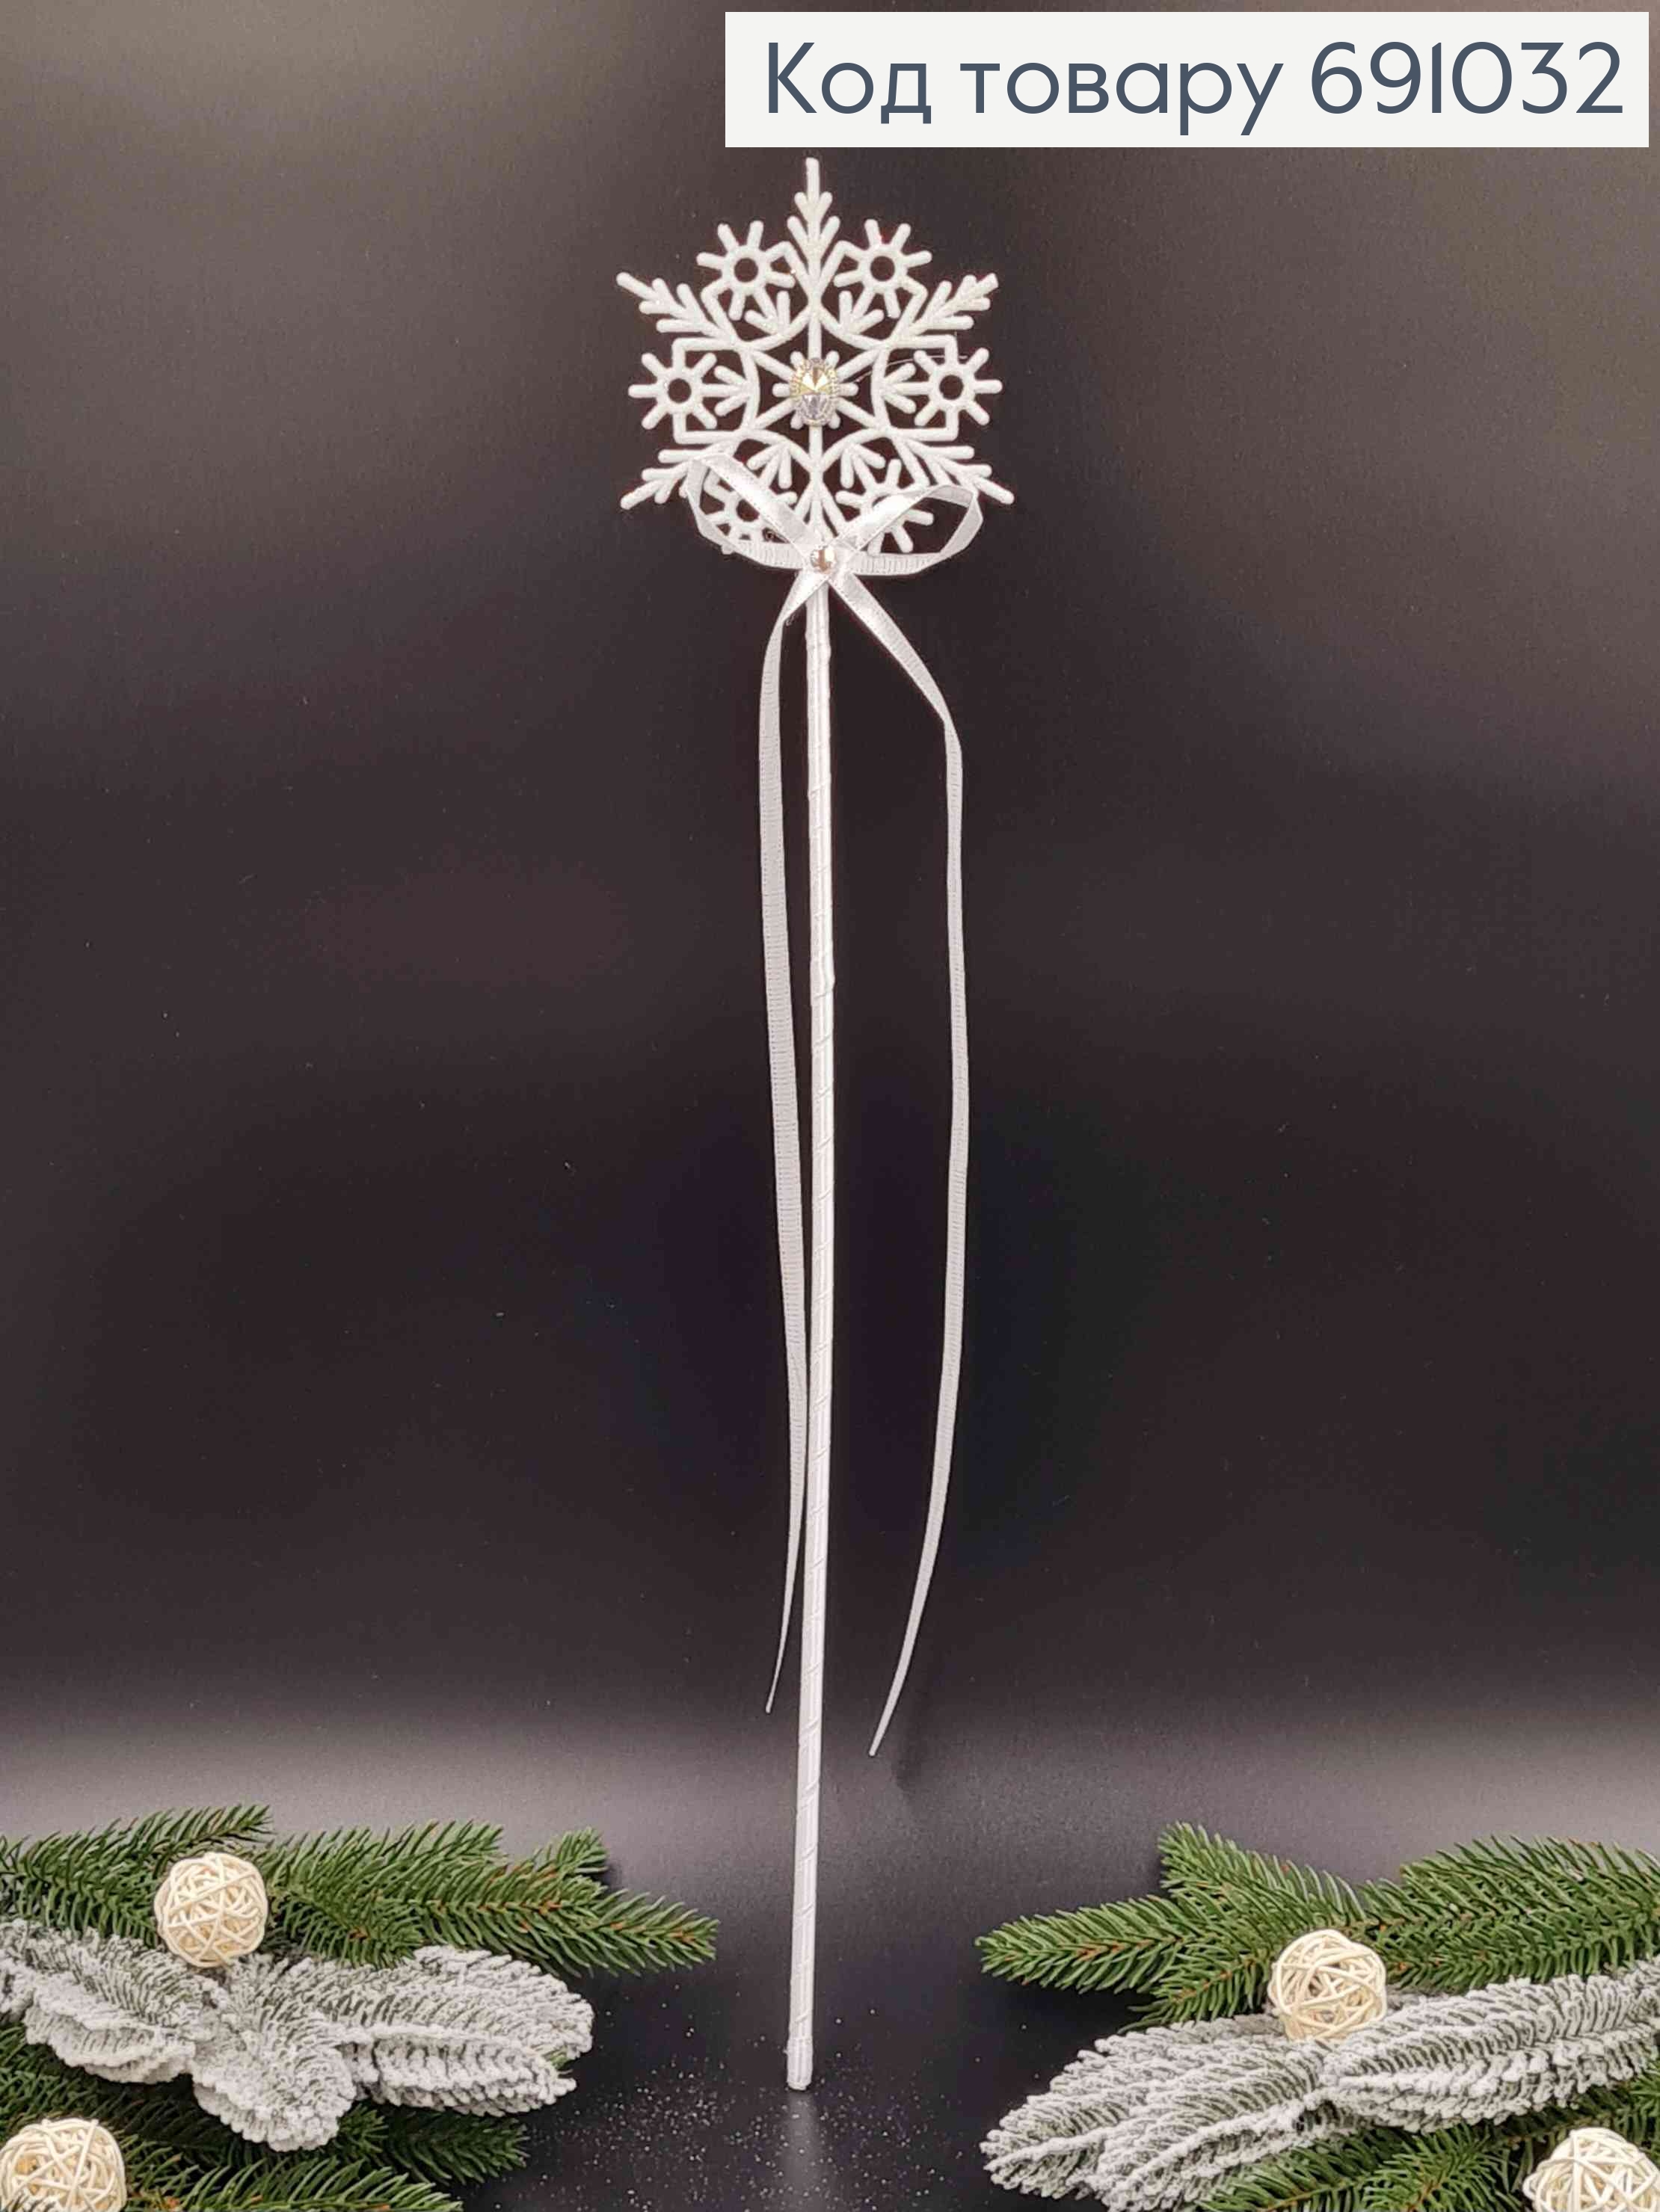 Волшебная палочка Снежной королевы, Звезда с камнем, обтянутая ленточкой, в белых тонах, длина, 51см 691032 фото 2